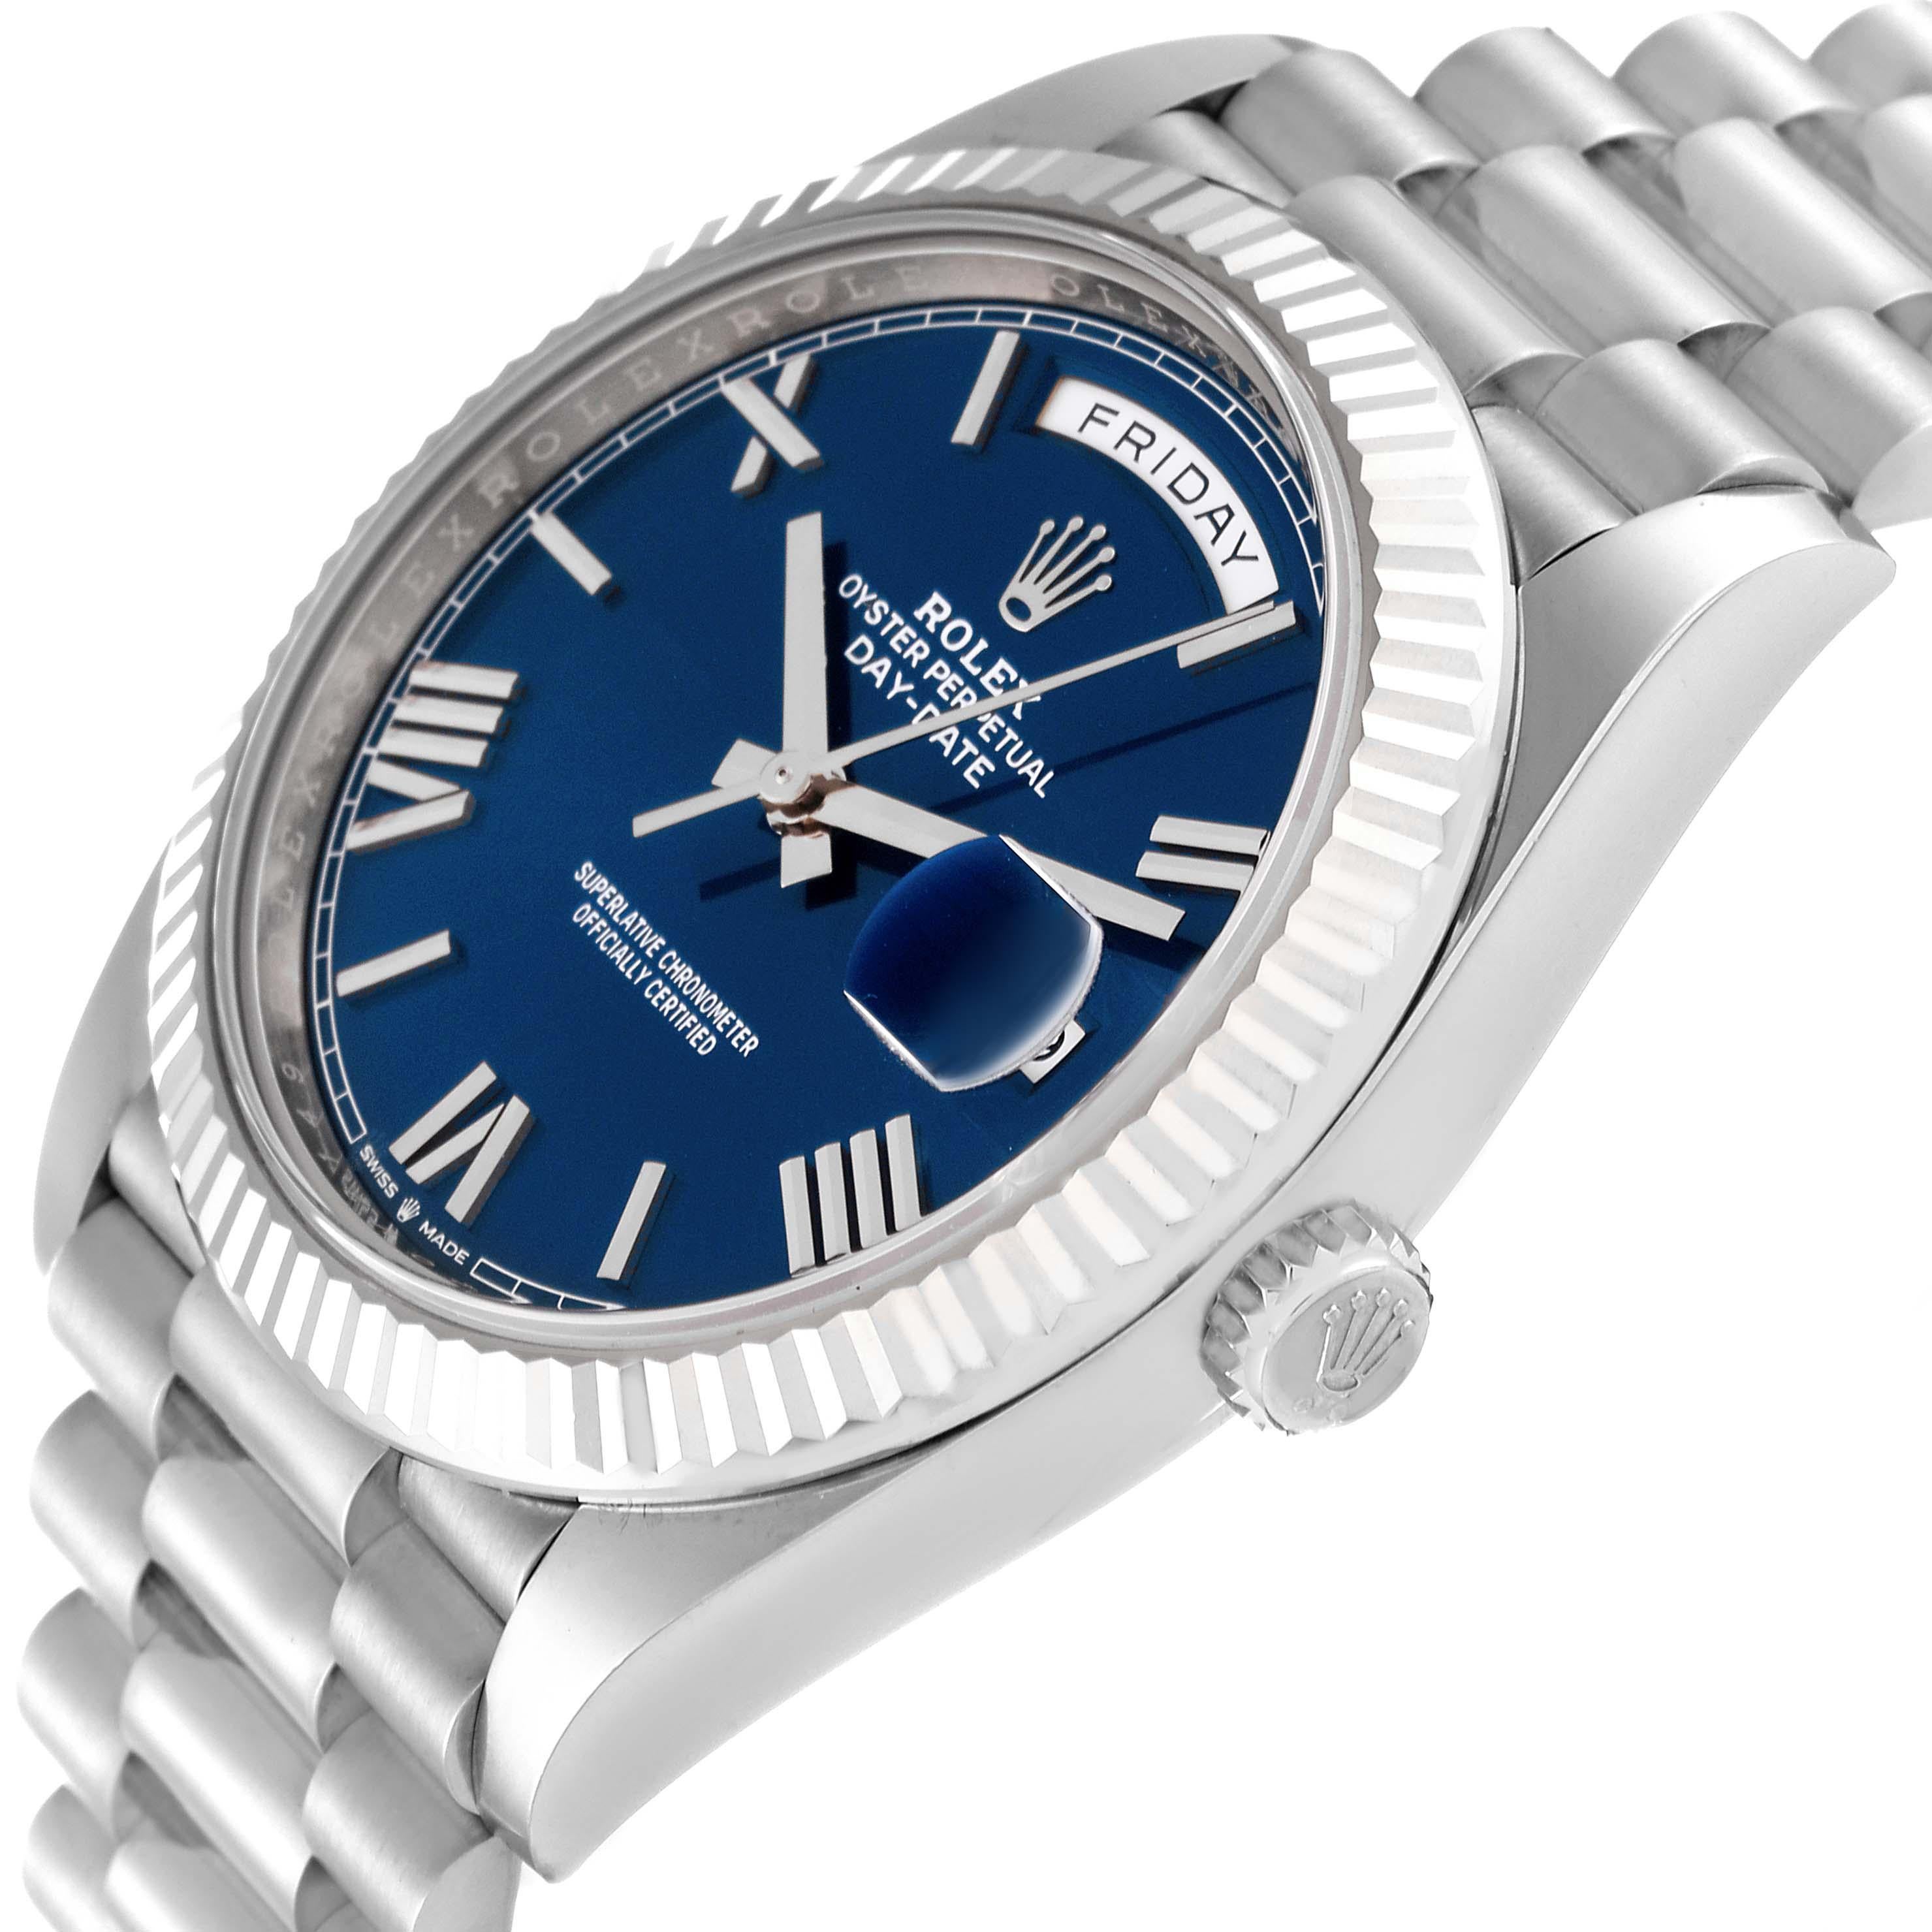 Rolex President Day-Date 40 Blue Dial White Gold Mens Watch 228239 Box Card. Mouvement à remontage automatique certifié officiellement chronomètre. Double fonction de réglage rapide. Boîtier en or blanc 18 carats de 40,0 mm de diamètre. Logo Rolex